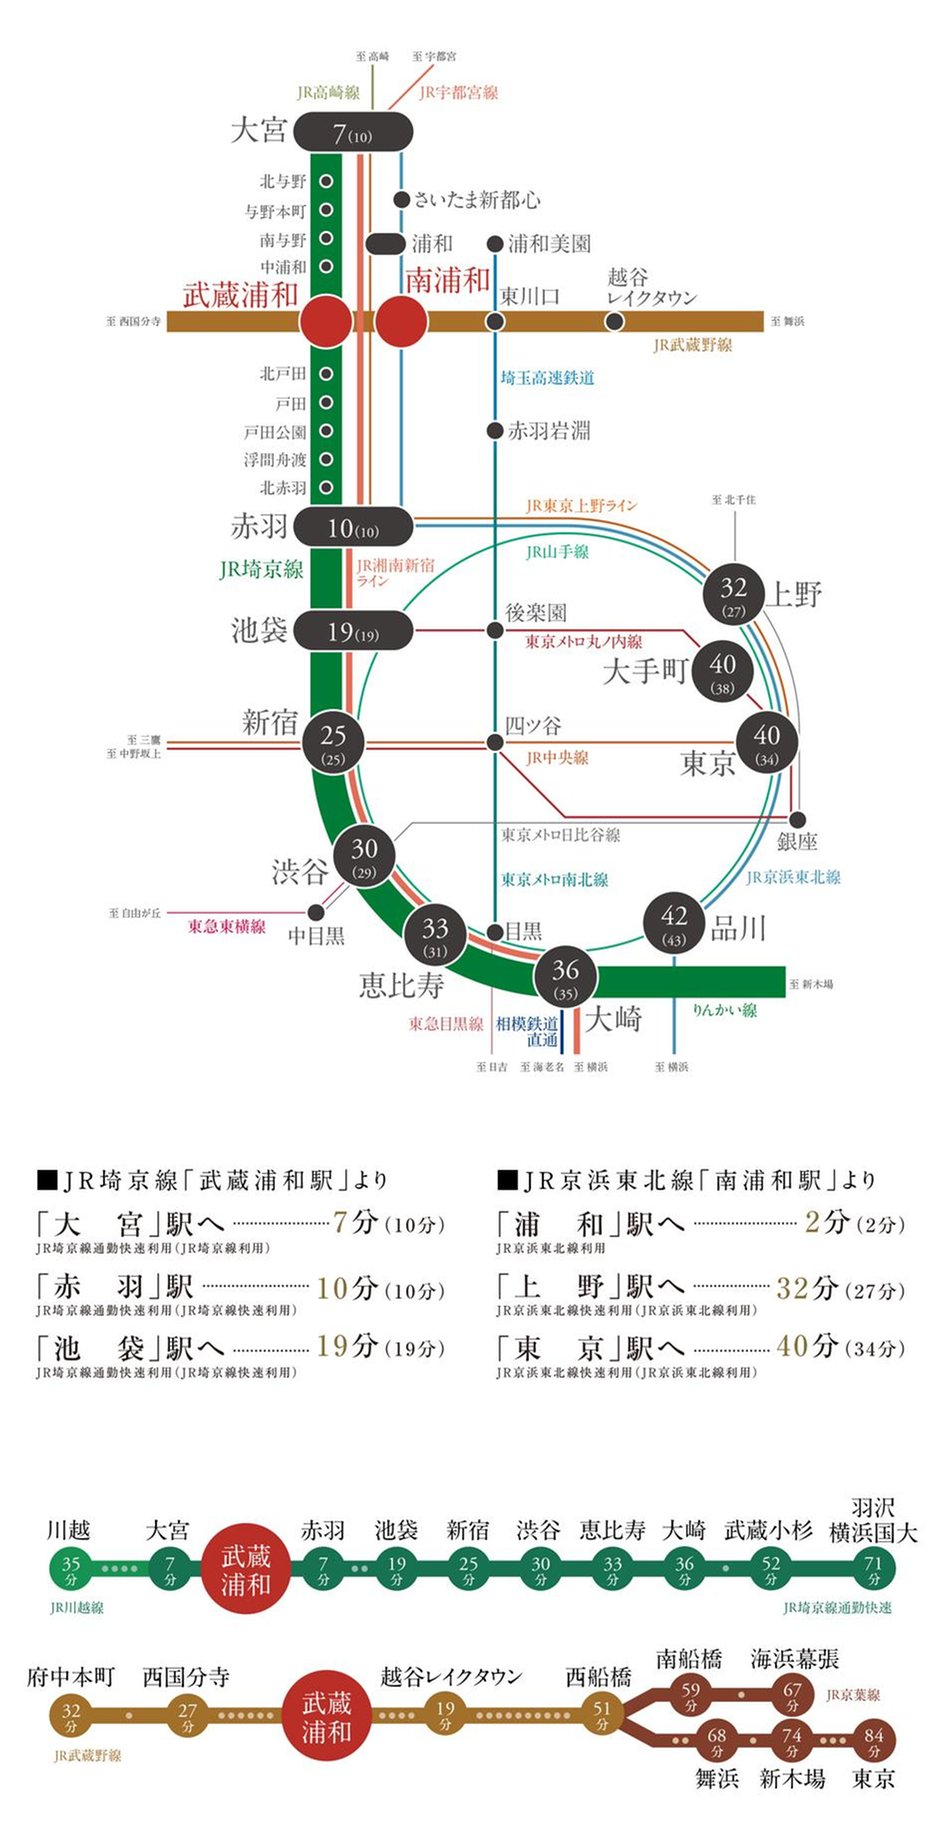 プレミアムレジデンス武蔵浦和の交通アクセス図